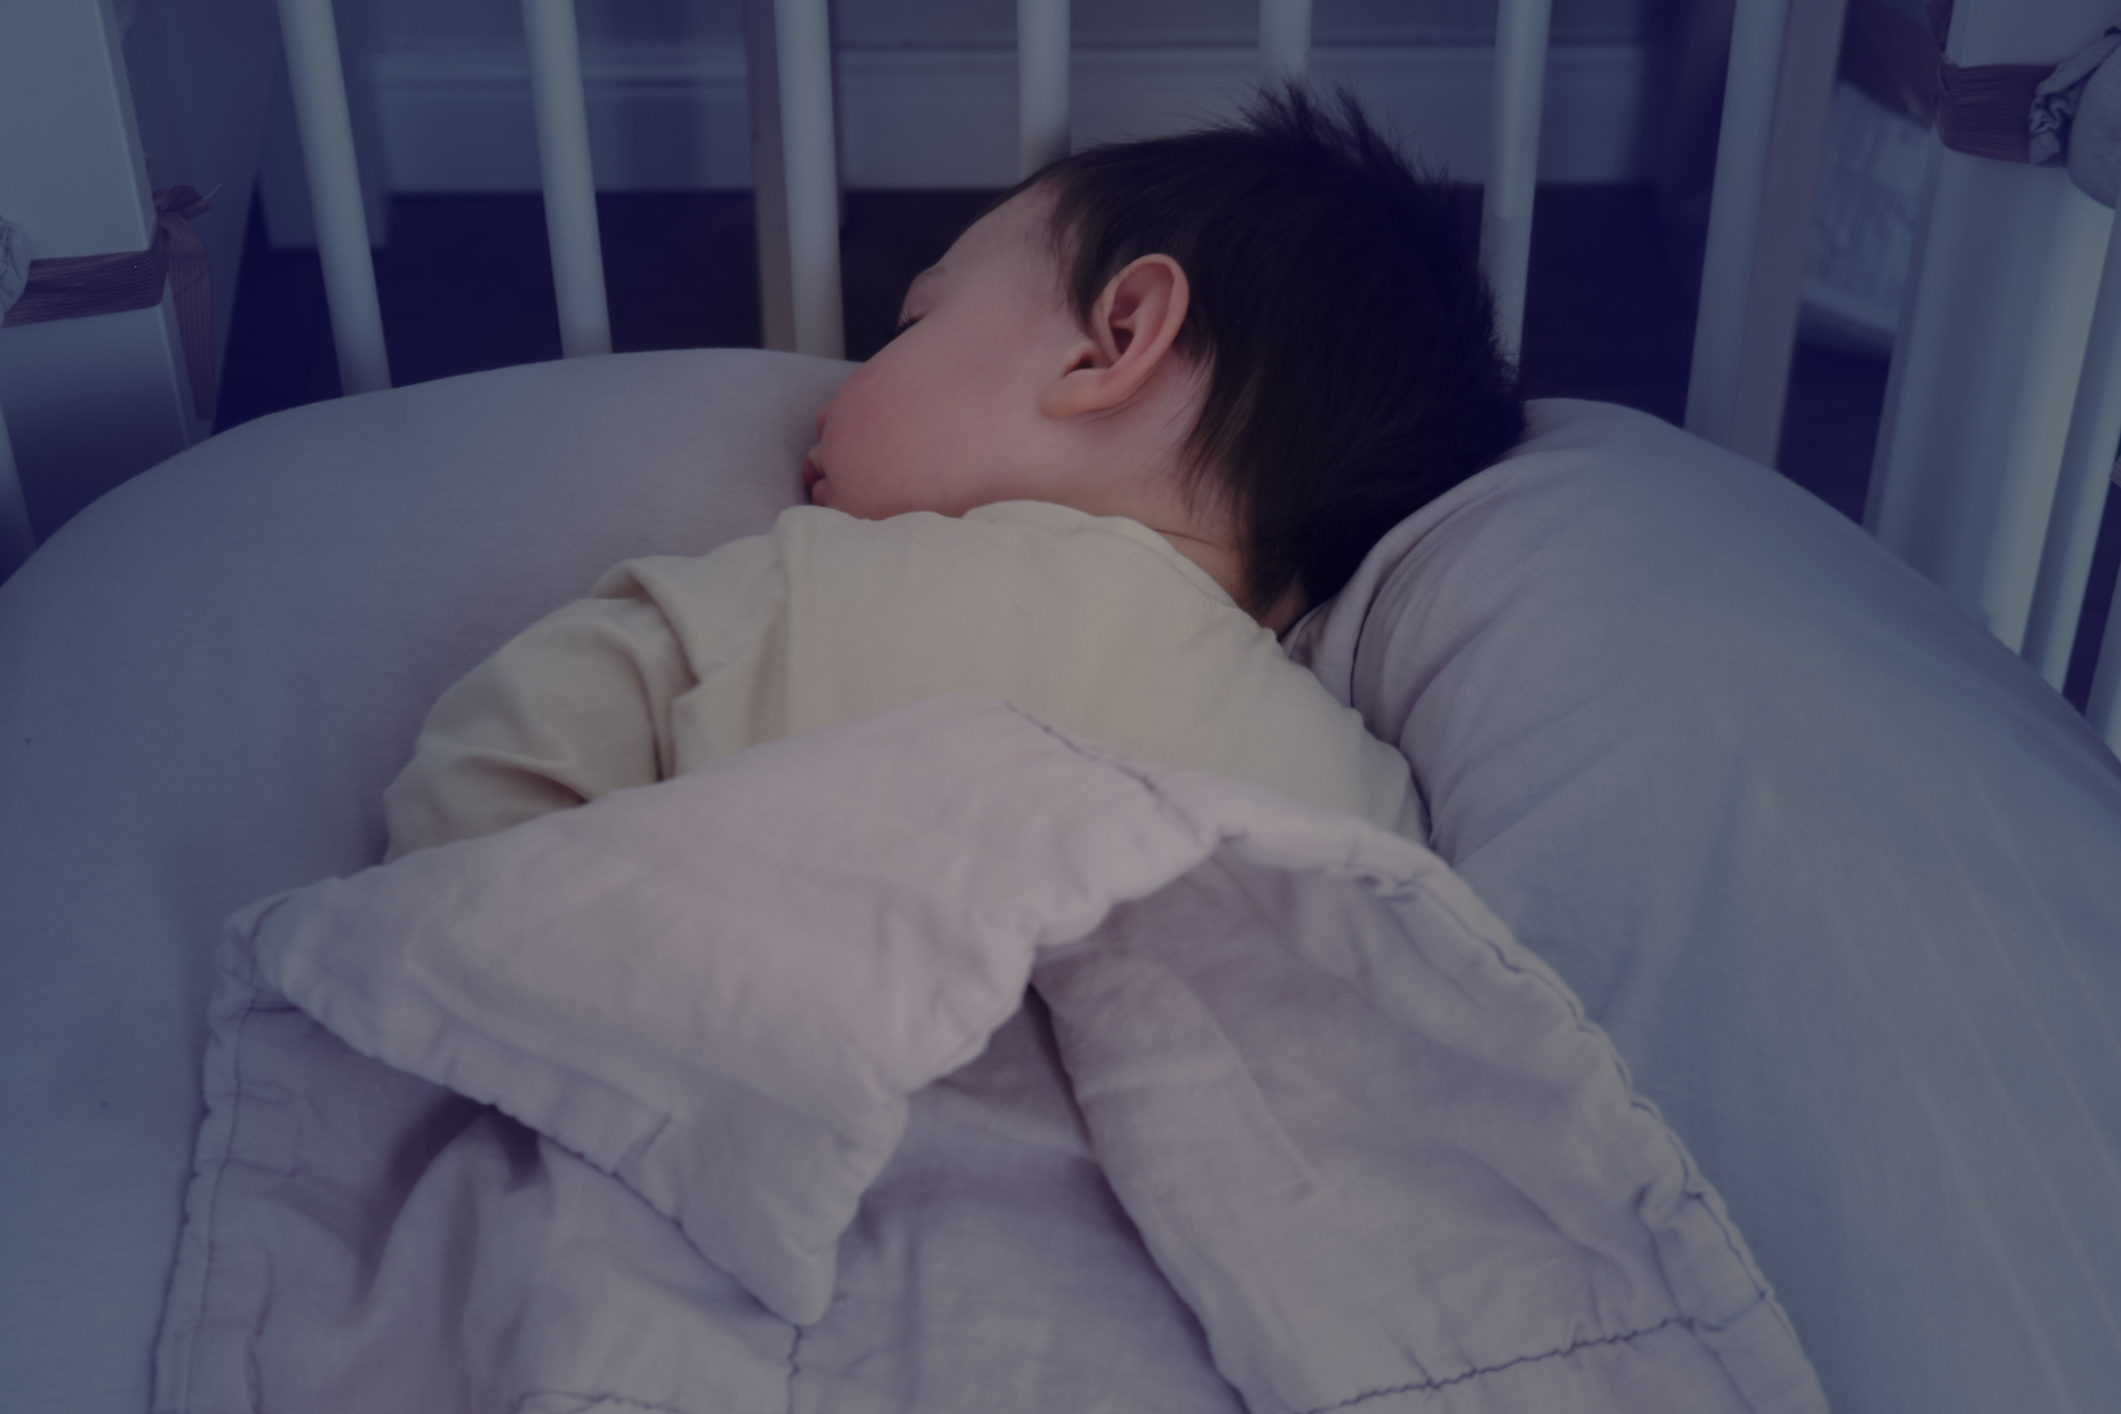 Preventing Risk Factors for Sudden Infant Death Syndrome